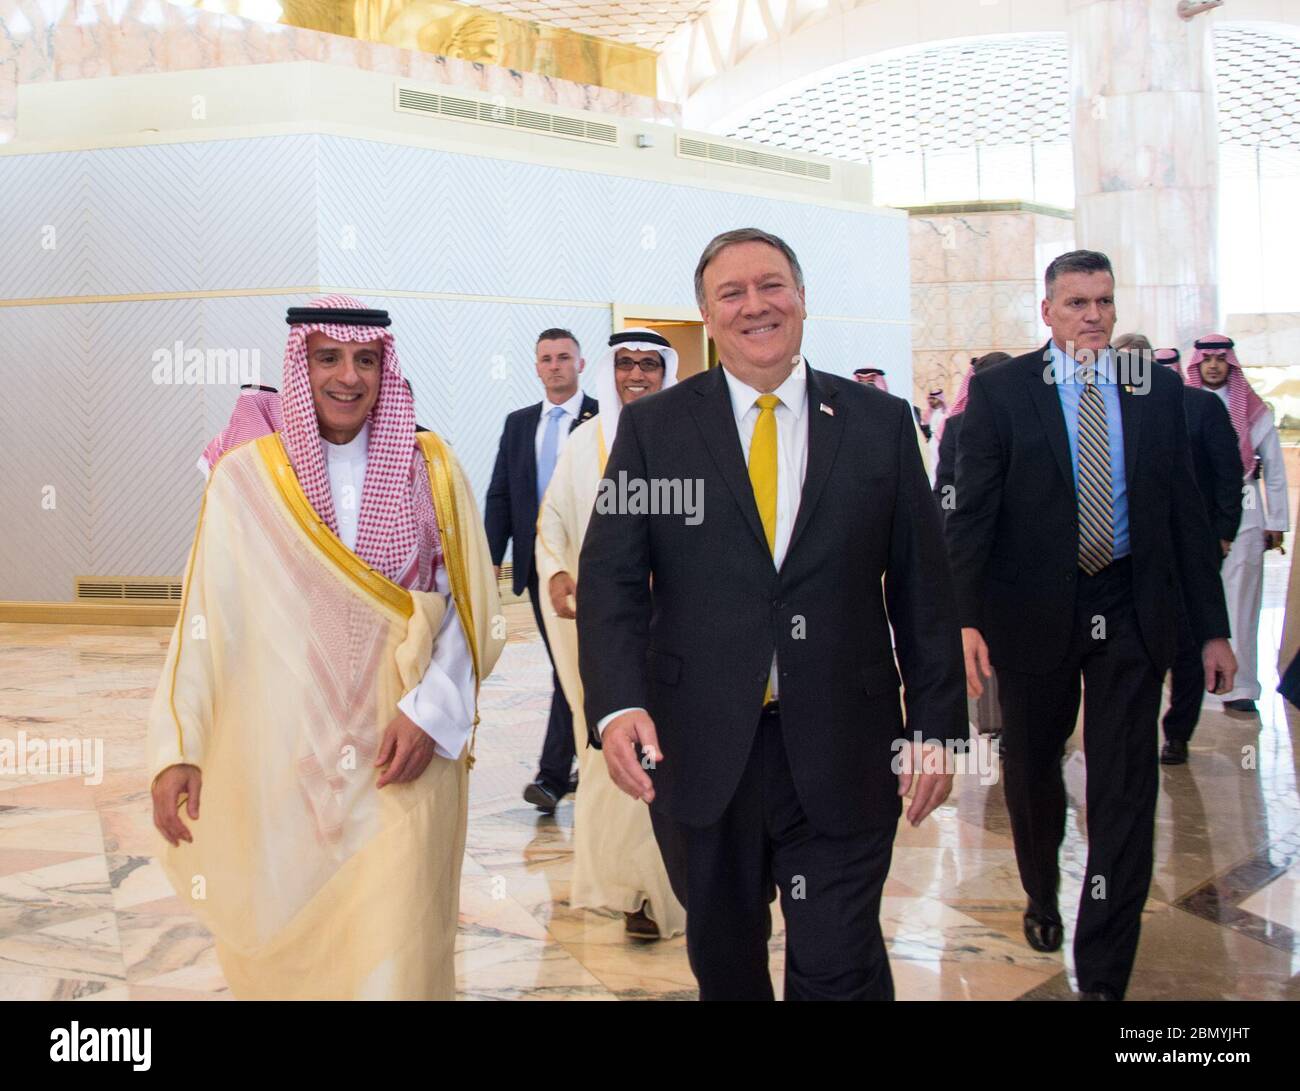 Le secrétaire Pompeo quitte l'Arabie saoudite le secrétaire d'État américain Mike Pompeo discute avec le ministre saoudien des Affaires étrangères Adel al-Jubeir alors qu'il quitte Riyad, en Arabie Saoudite, le 29 avril 2018, après des réunions avec des représentants du gouvernement saoudien. Banque D'Images